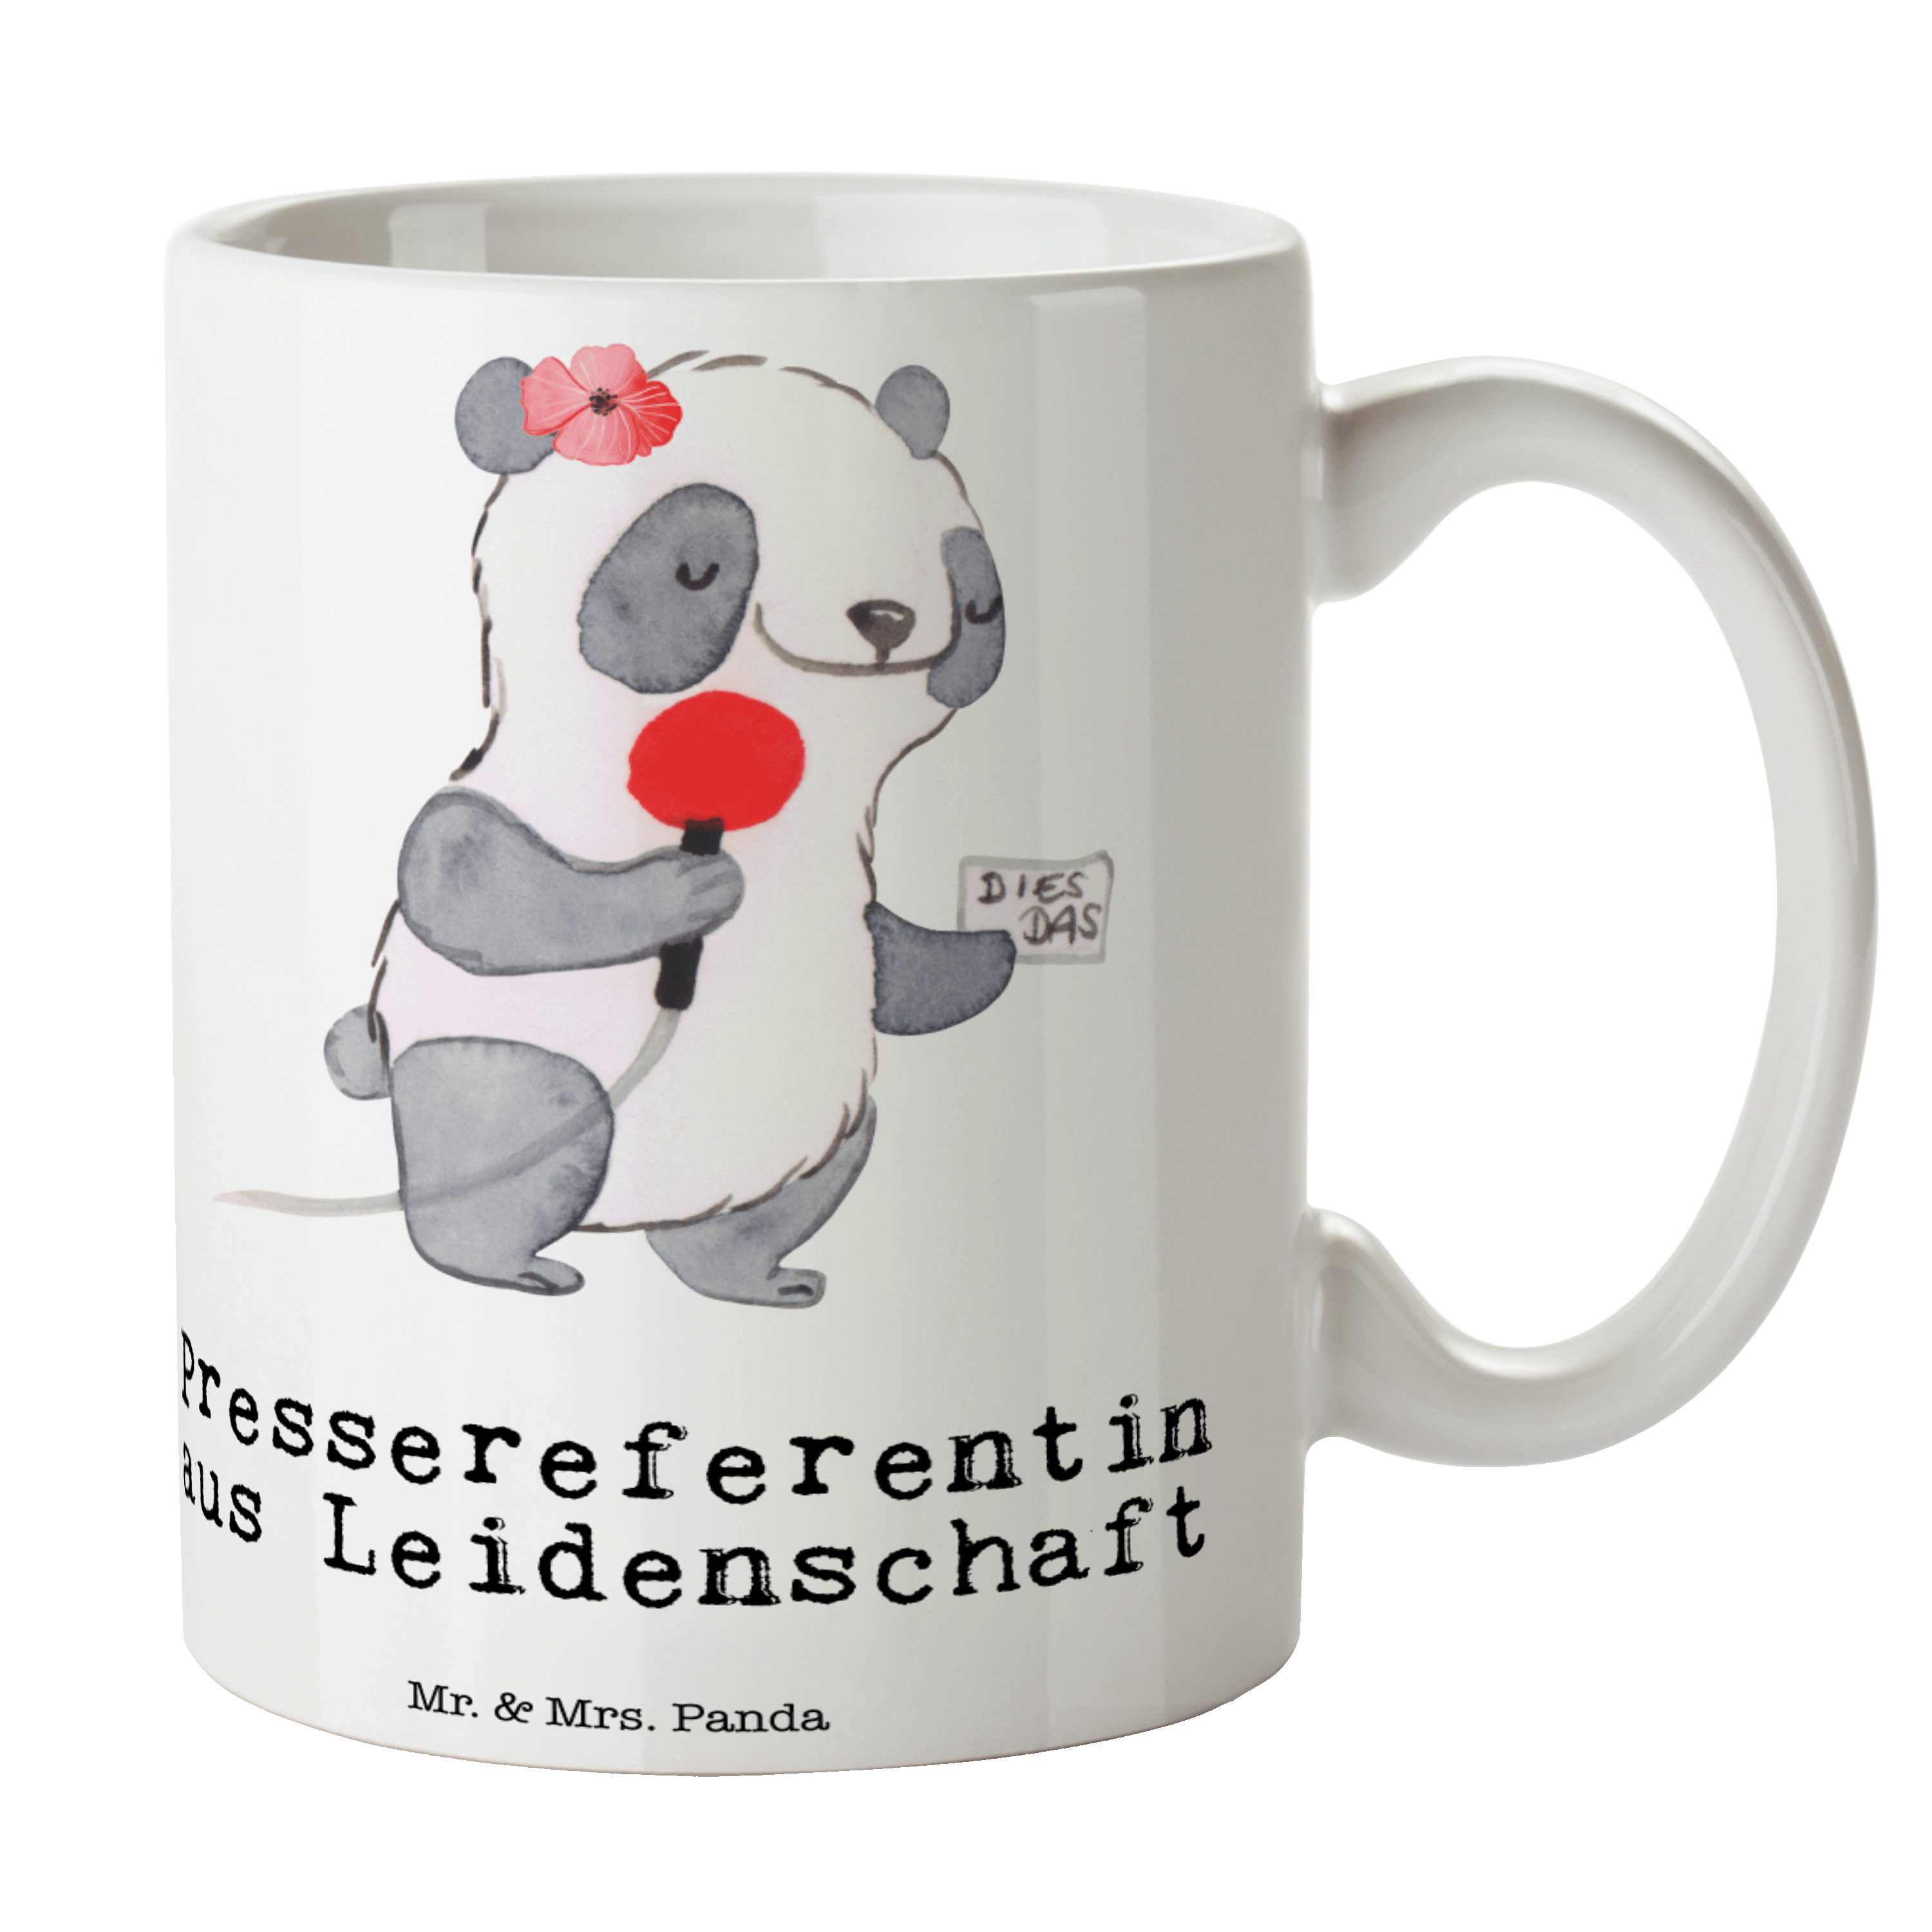 Mr. & Mrs. Panda Tasse Pressereferentin aus Leidenschaft - Weiß - Geschenk, Geschenk Tasse, Keramik